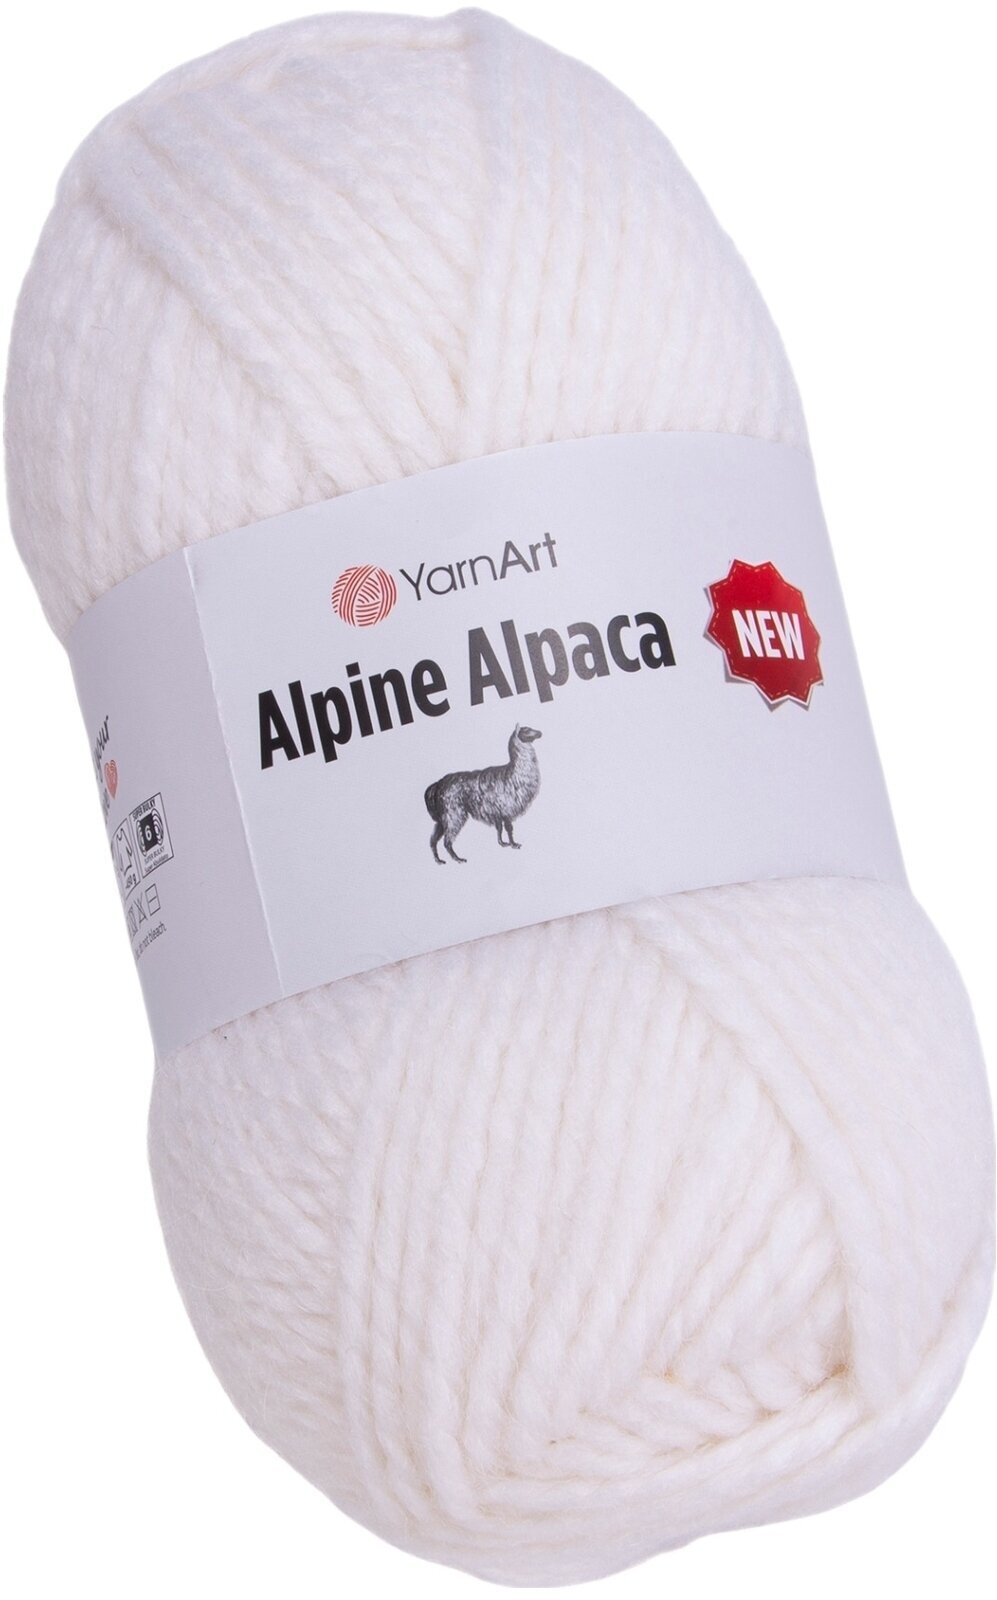 Νήμα Πλεξίματος Yarn Art Alpine Alpaca 1440